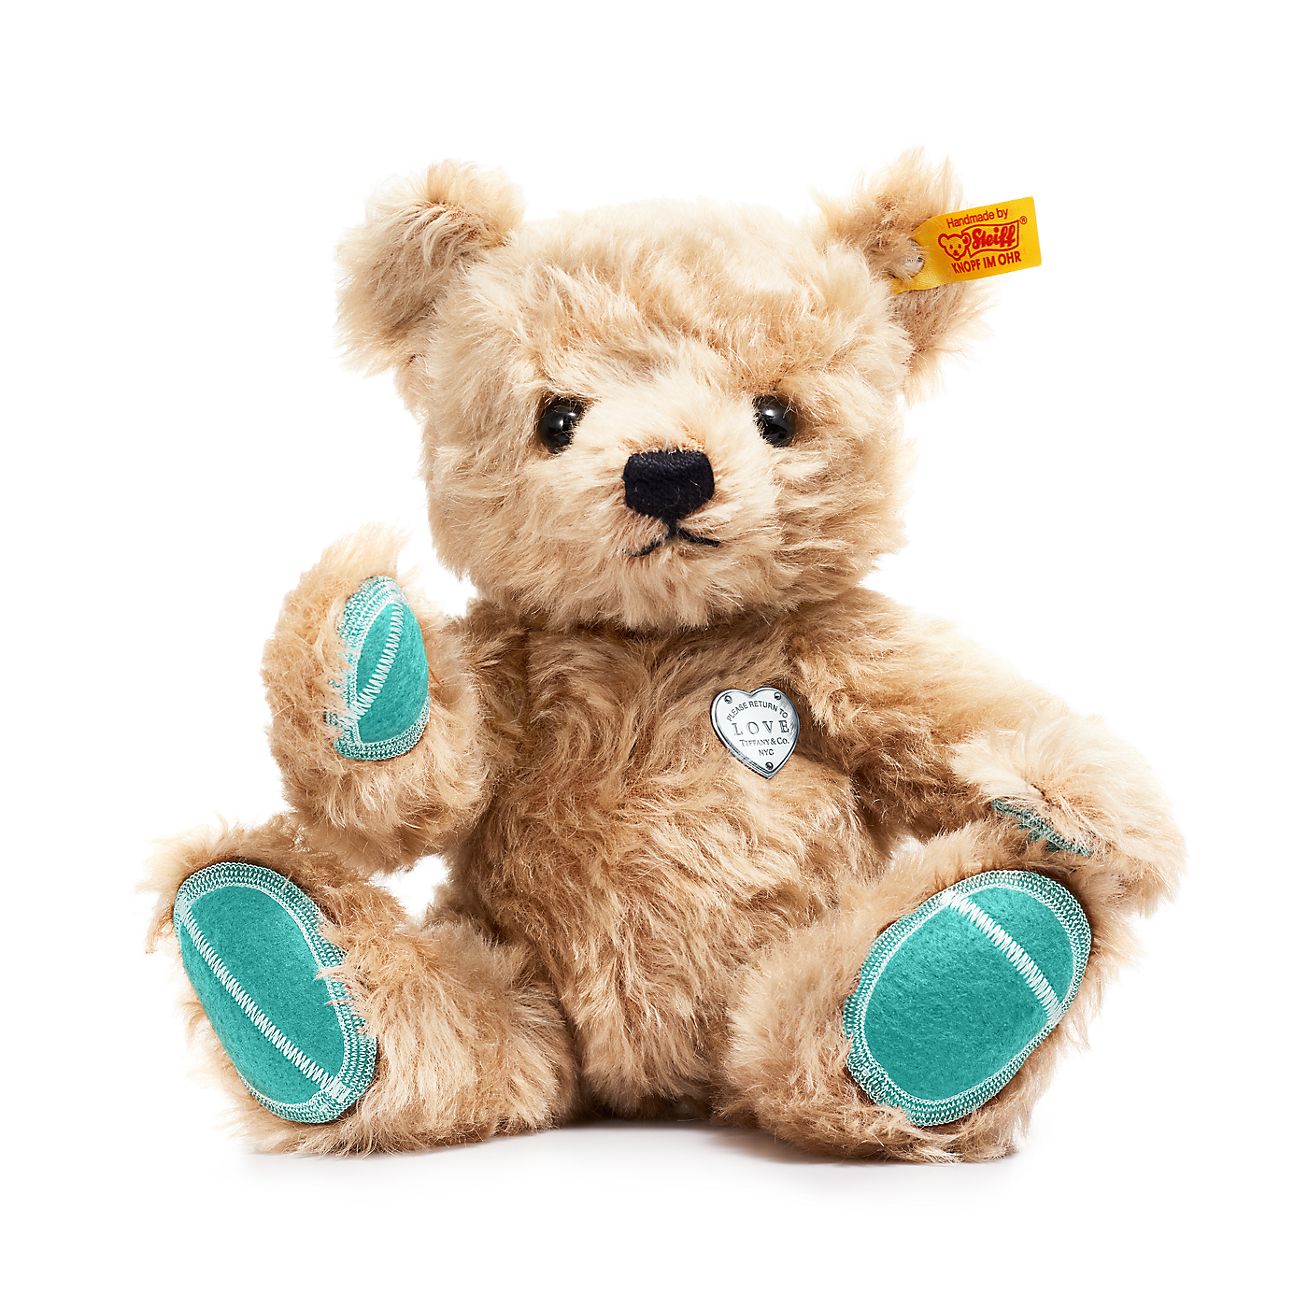 Tiffany x Steiff Return to Tiffany™ Love classic teddy bear in 